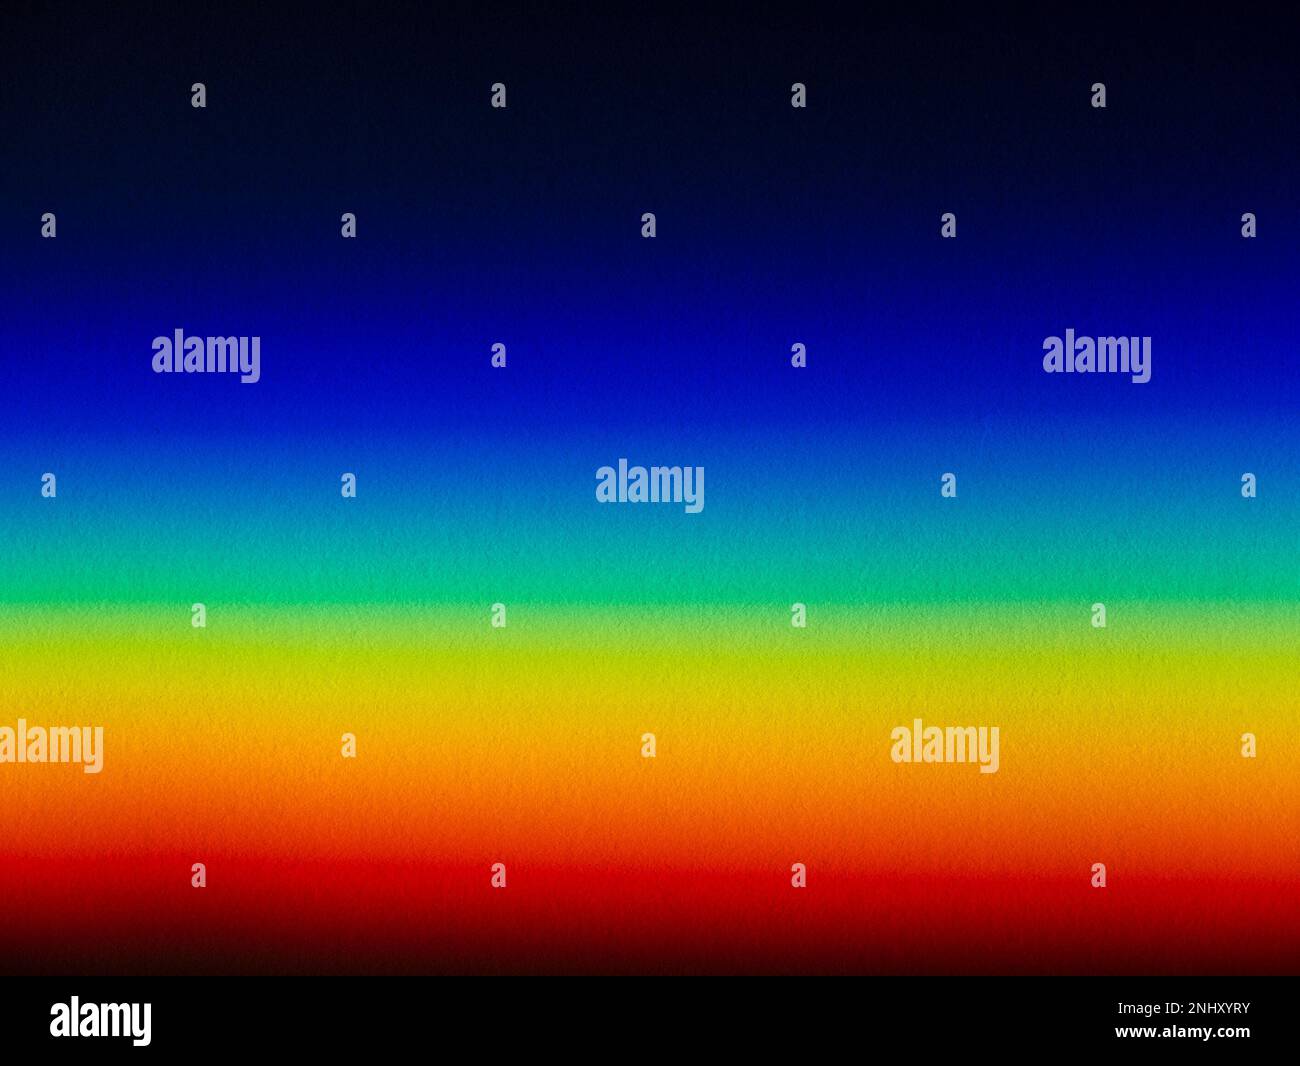 Luce solare pura spettro di colori ROYGBIV da un prisma proiettato su carta bianca per mostrare lo spettro visibile come bande di colori intensi e luminosi. Foto Stock